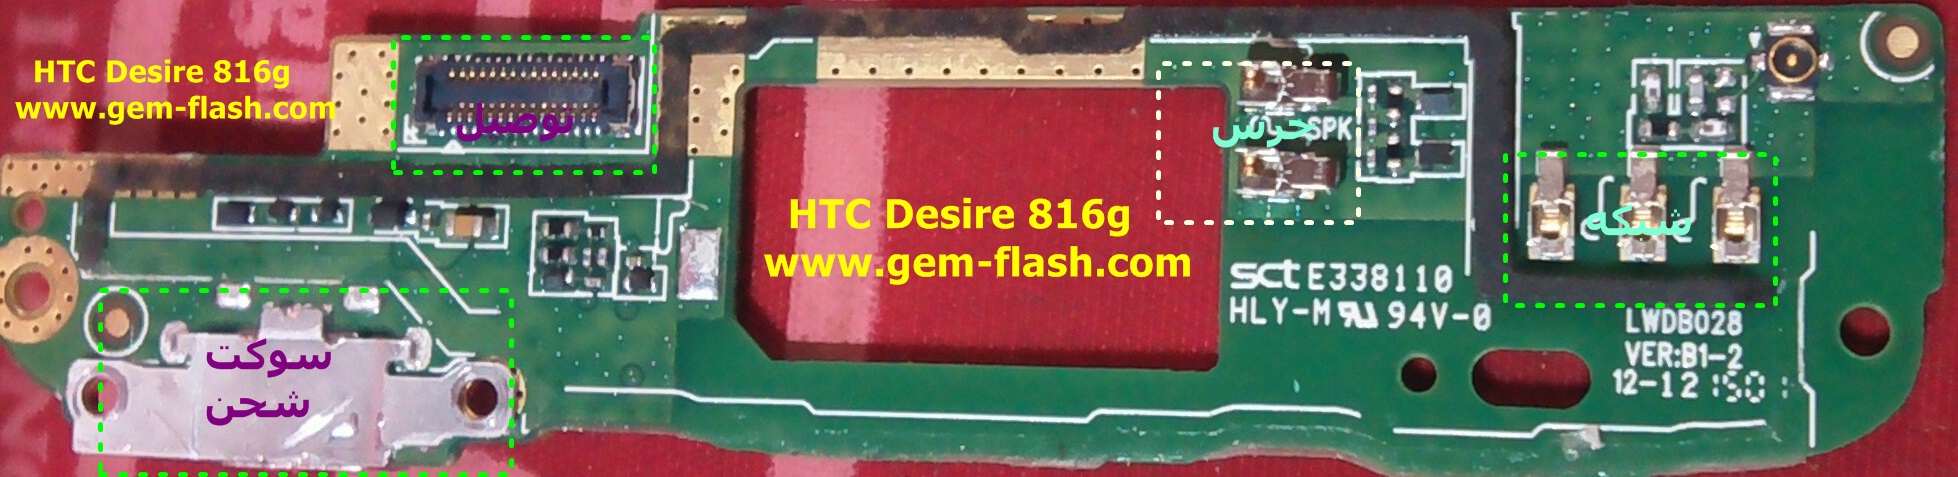     HTC Desire 816G  __--